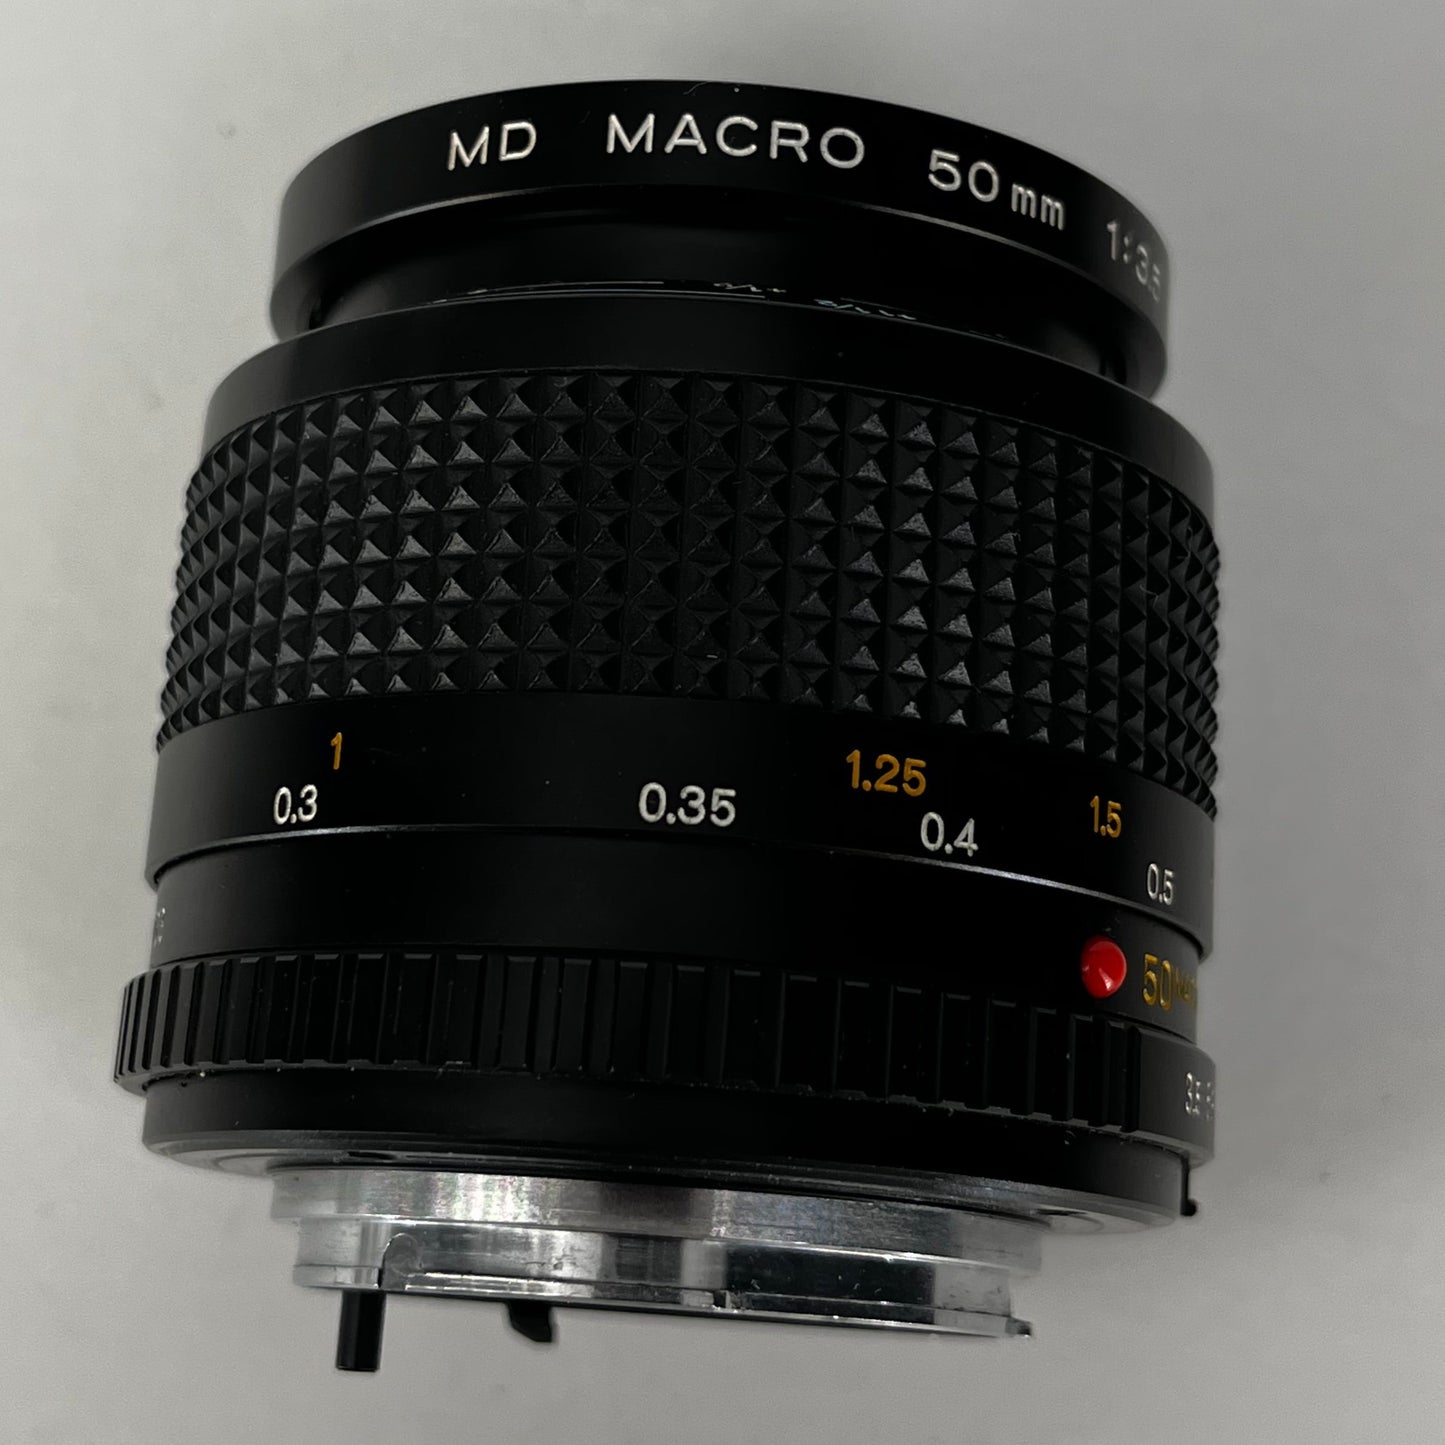 Minolta MD 50mm f3.5 Macro